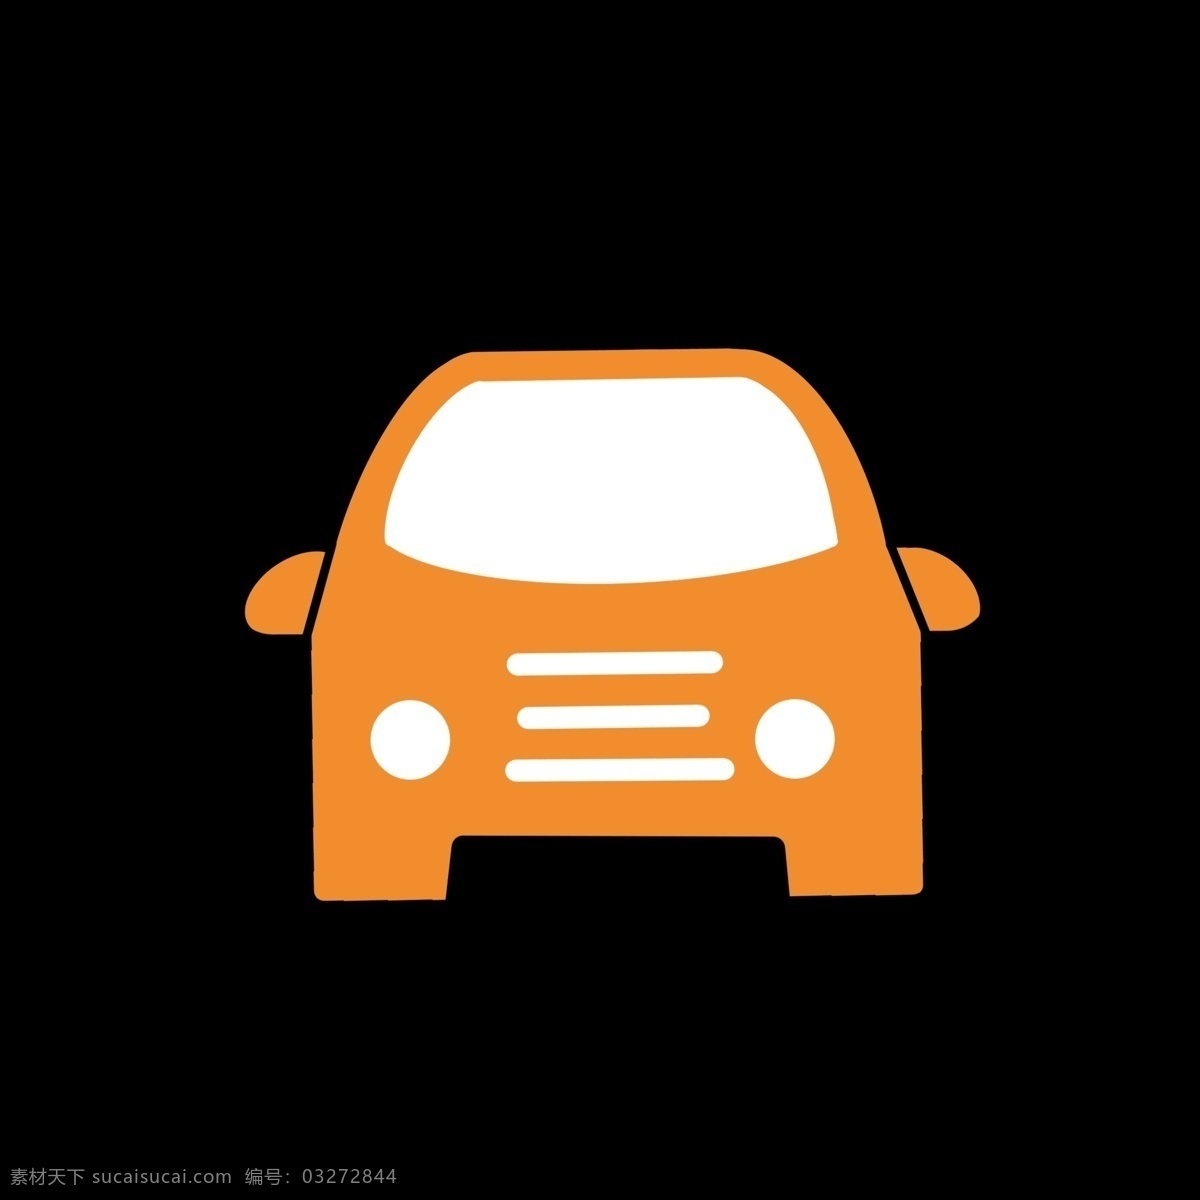 橘黄色 汽车 样式 图标 几何图形 彩色 白色 视频图标 卡通 ppt可用 简单 简约 简洁